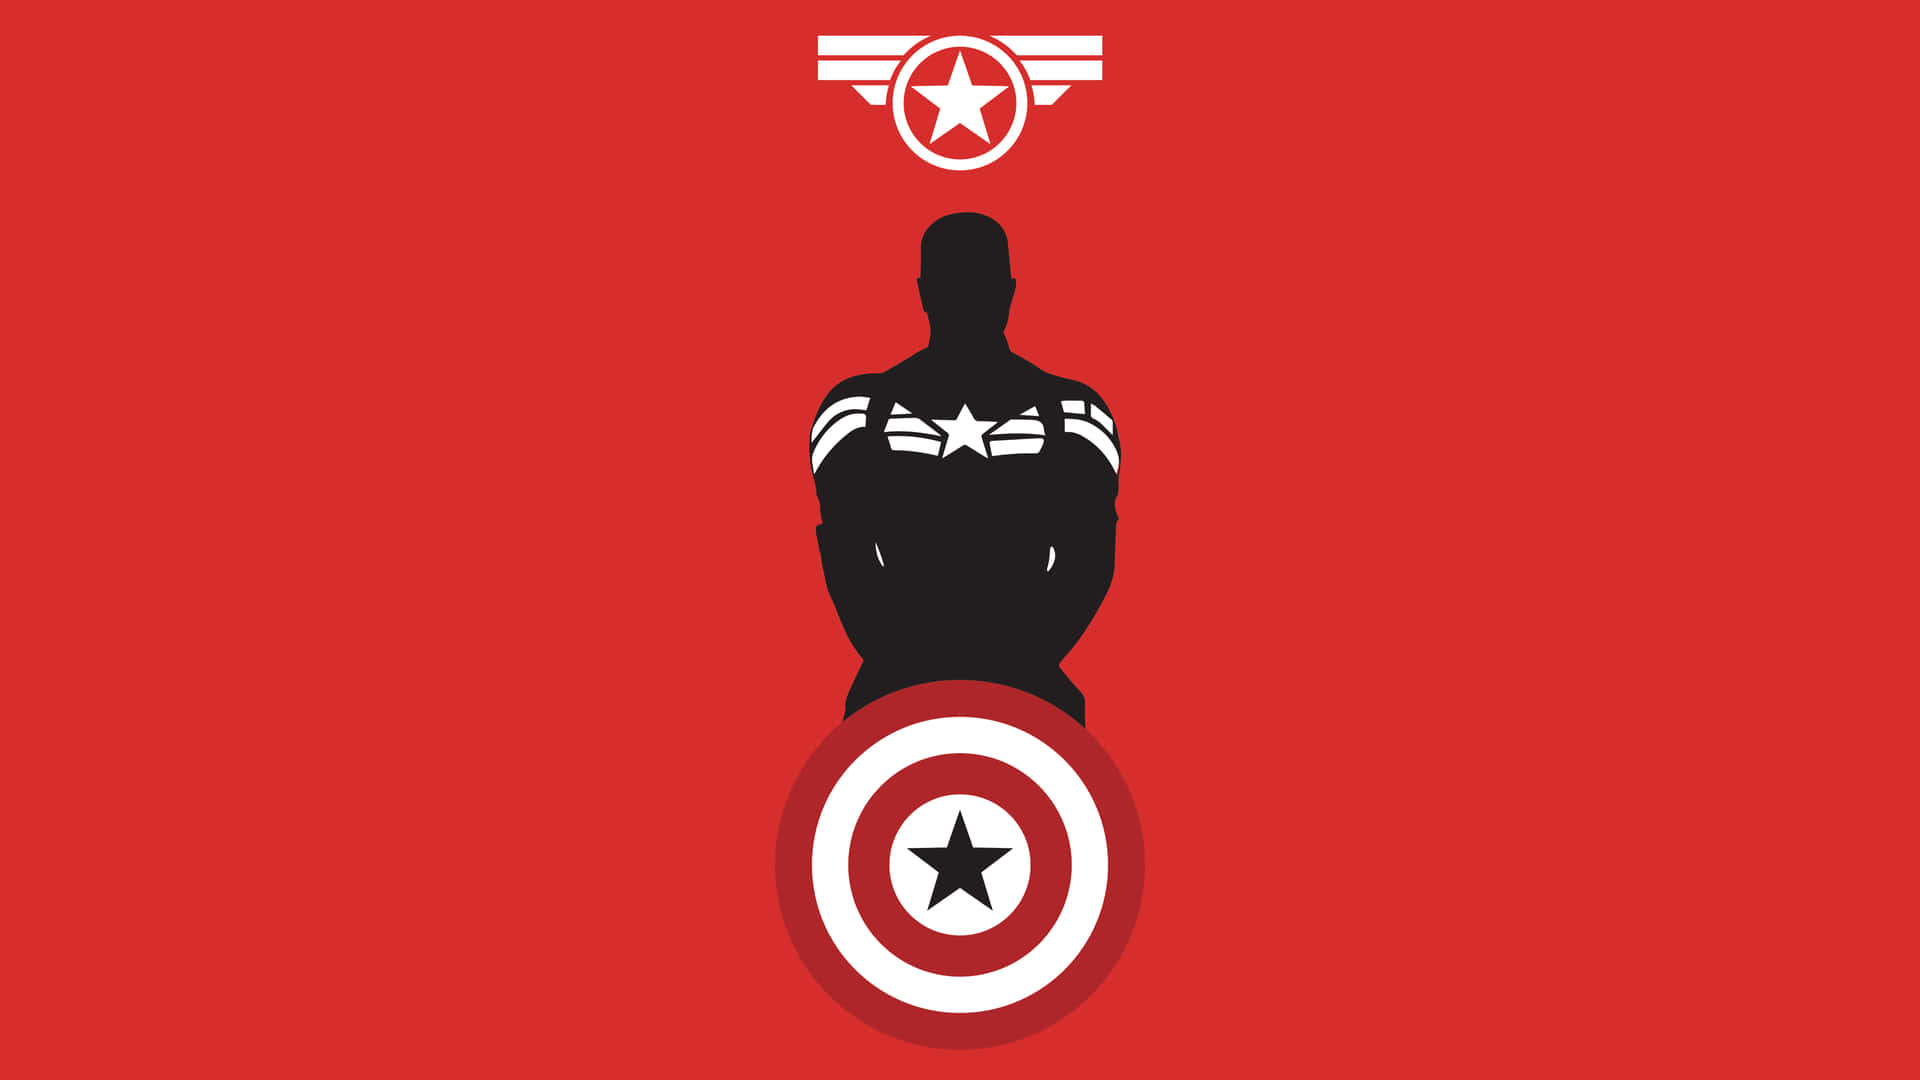 Desktop Wallpaper of Captain America Fighting Against Evil Wallpaper